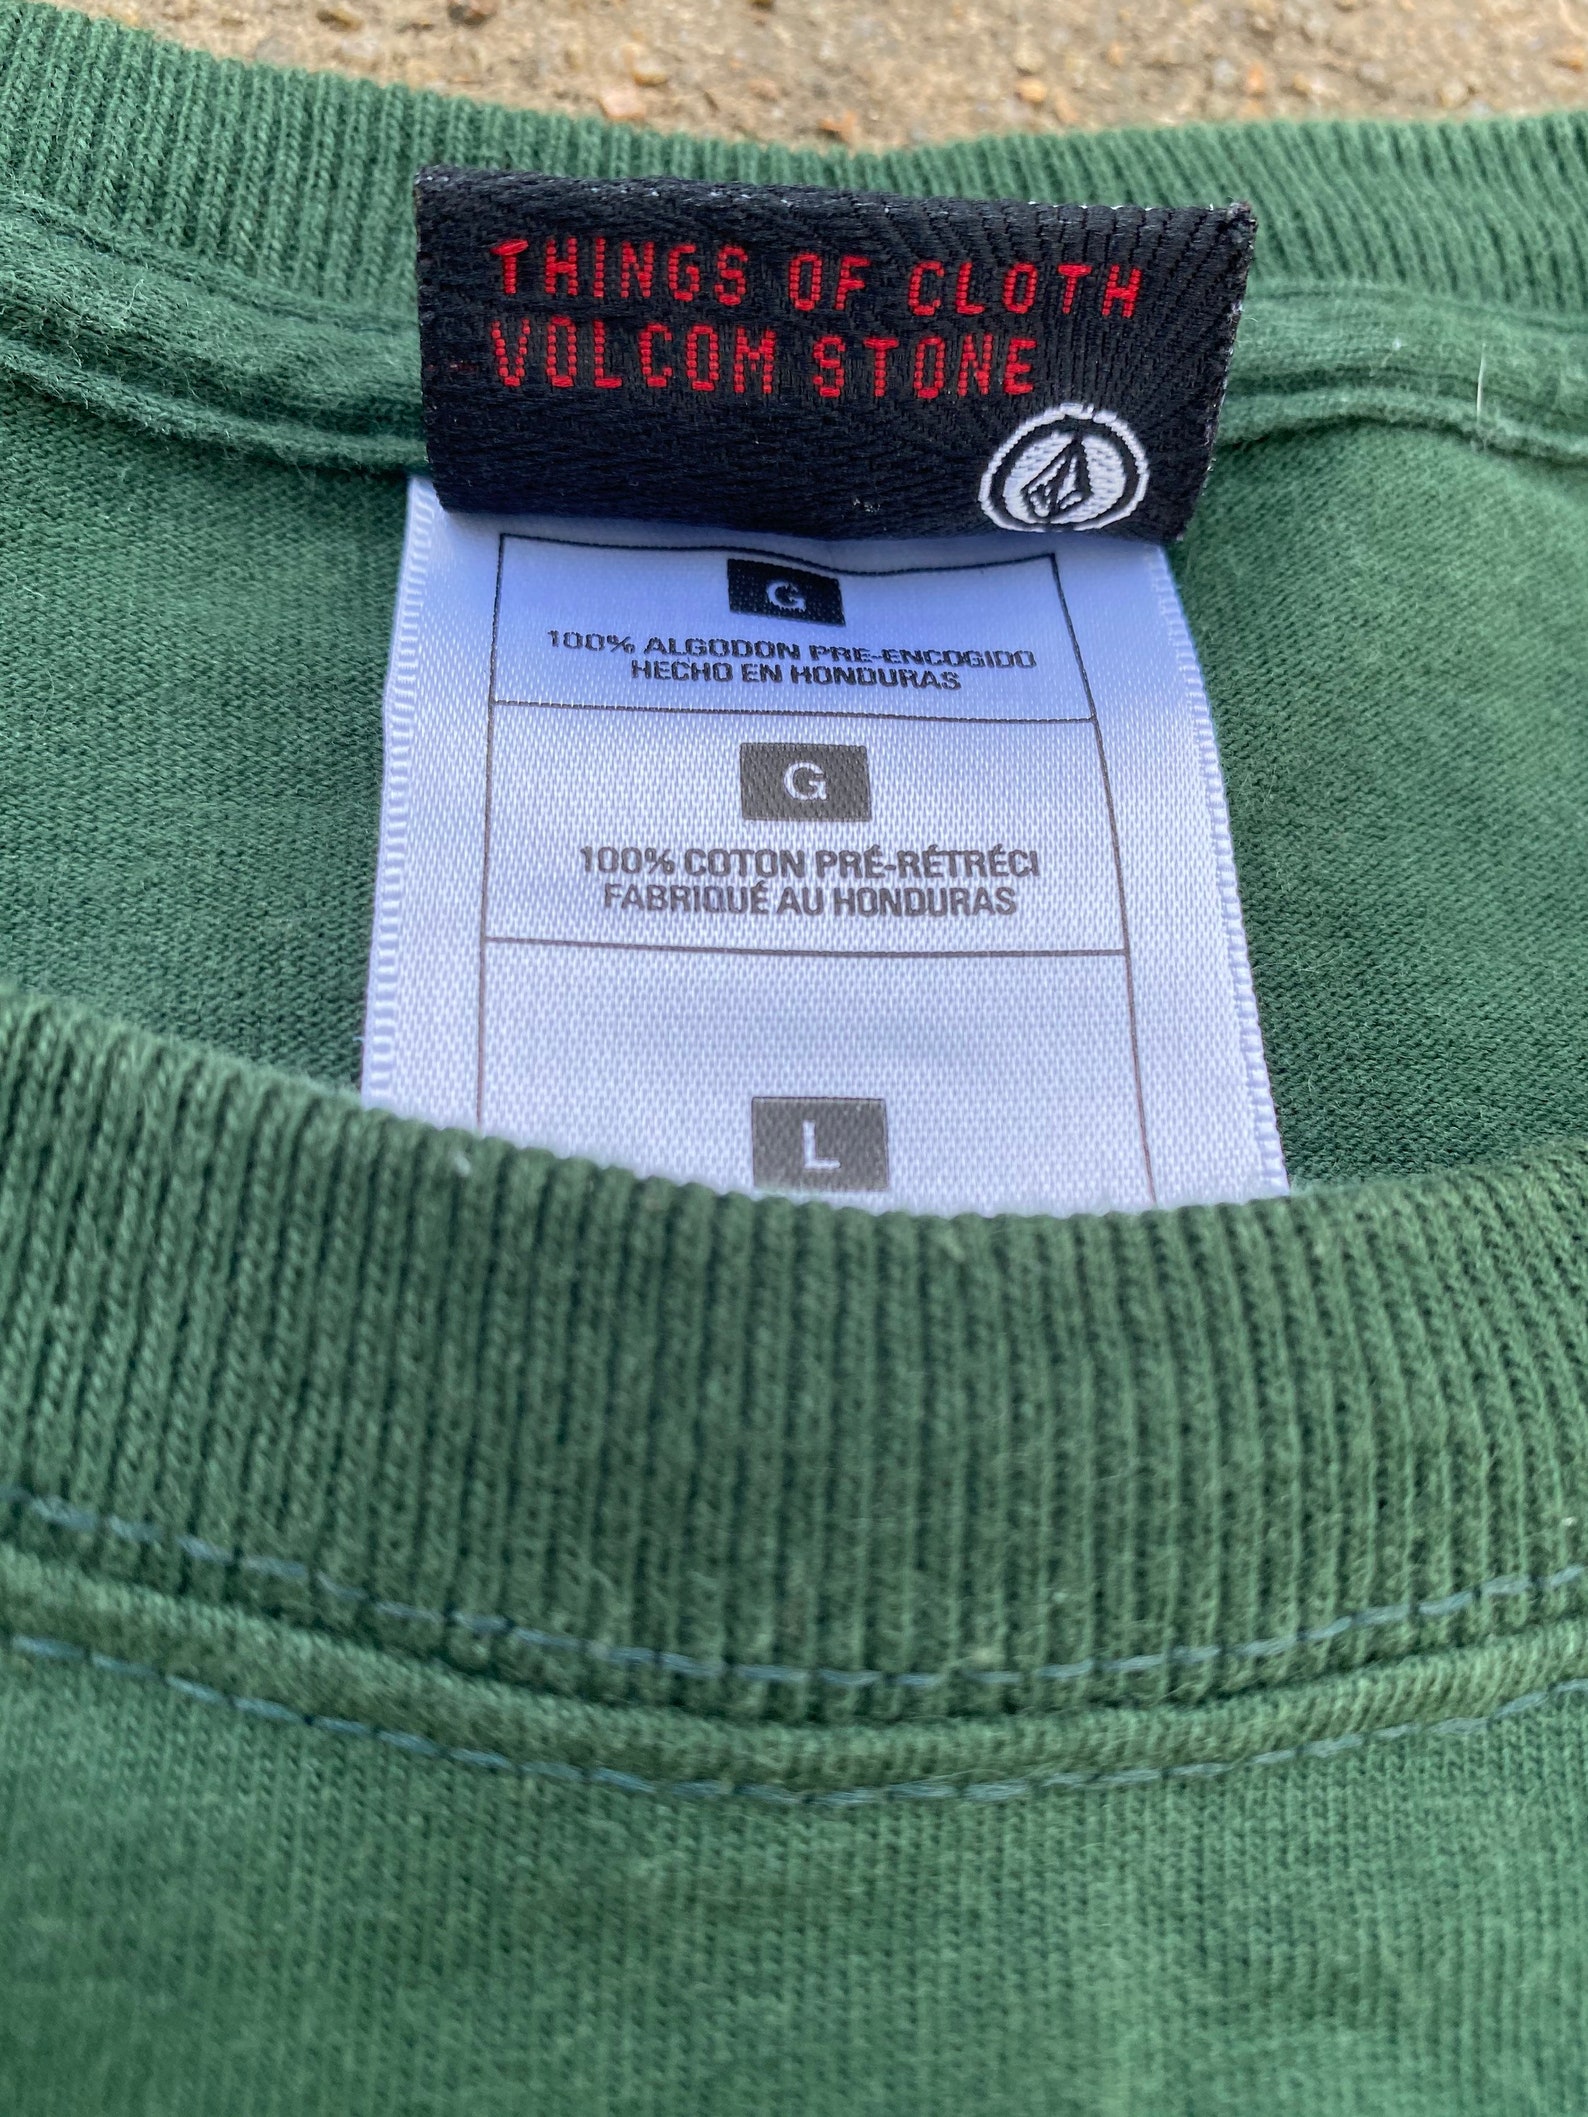 90s/Y2K Volcom T Shirt | Etsy